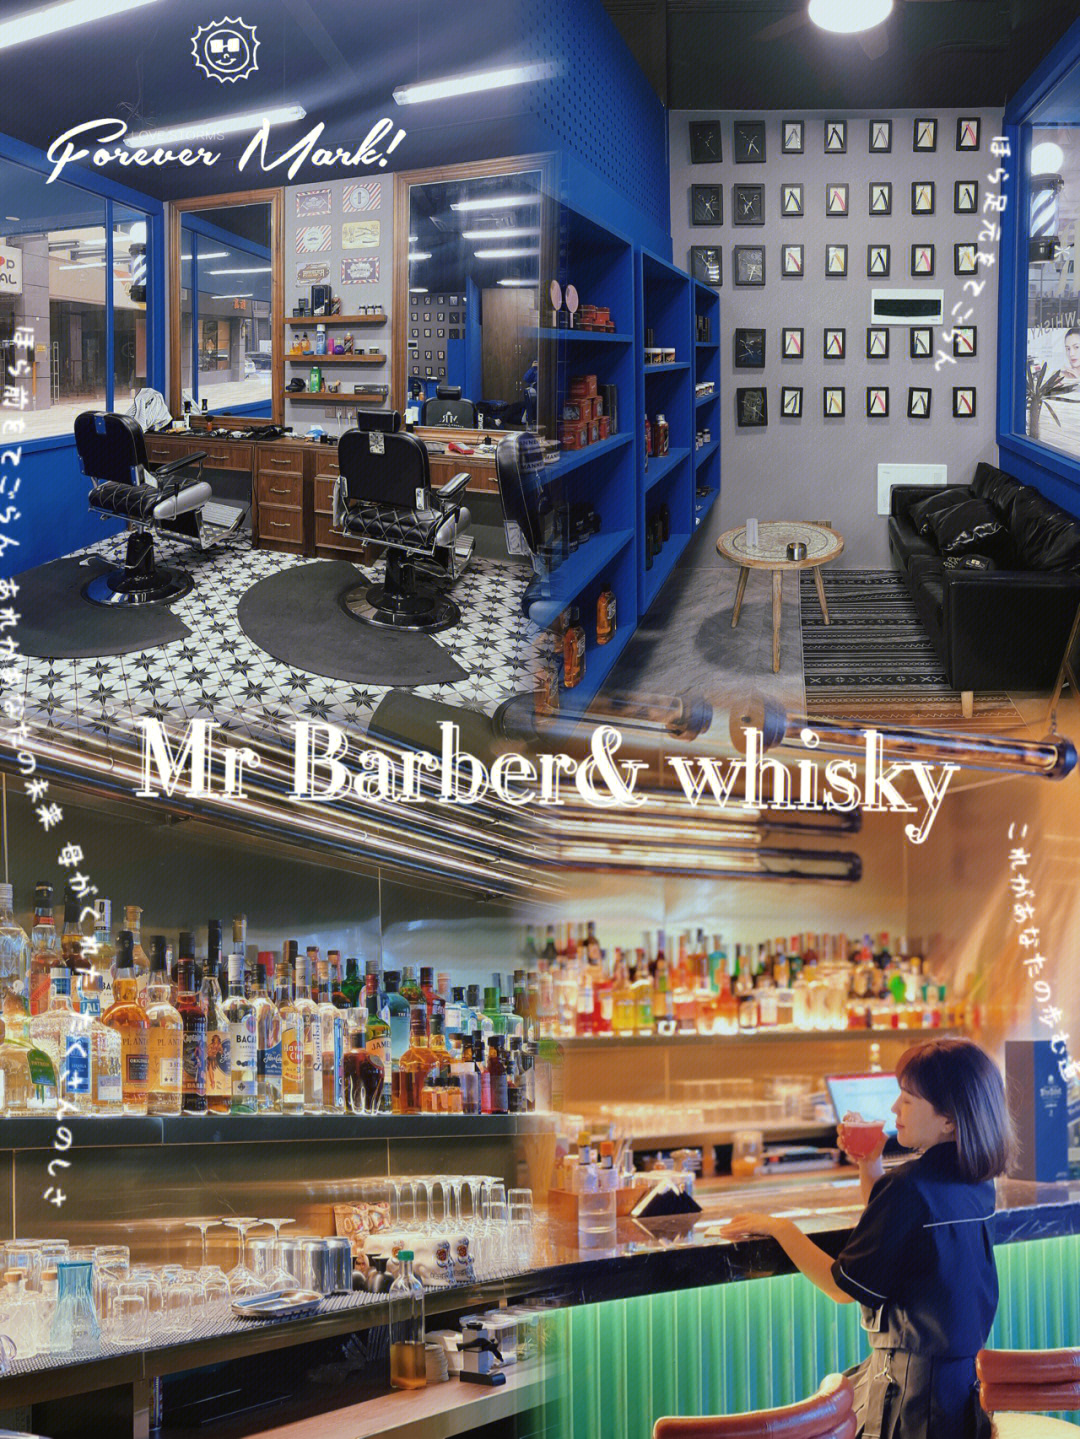 大朗首家barber shop与whisky酒吧结合店!